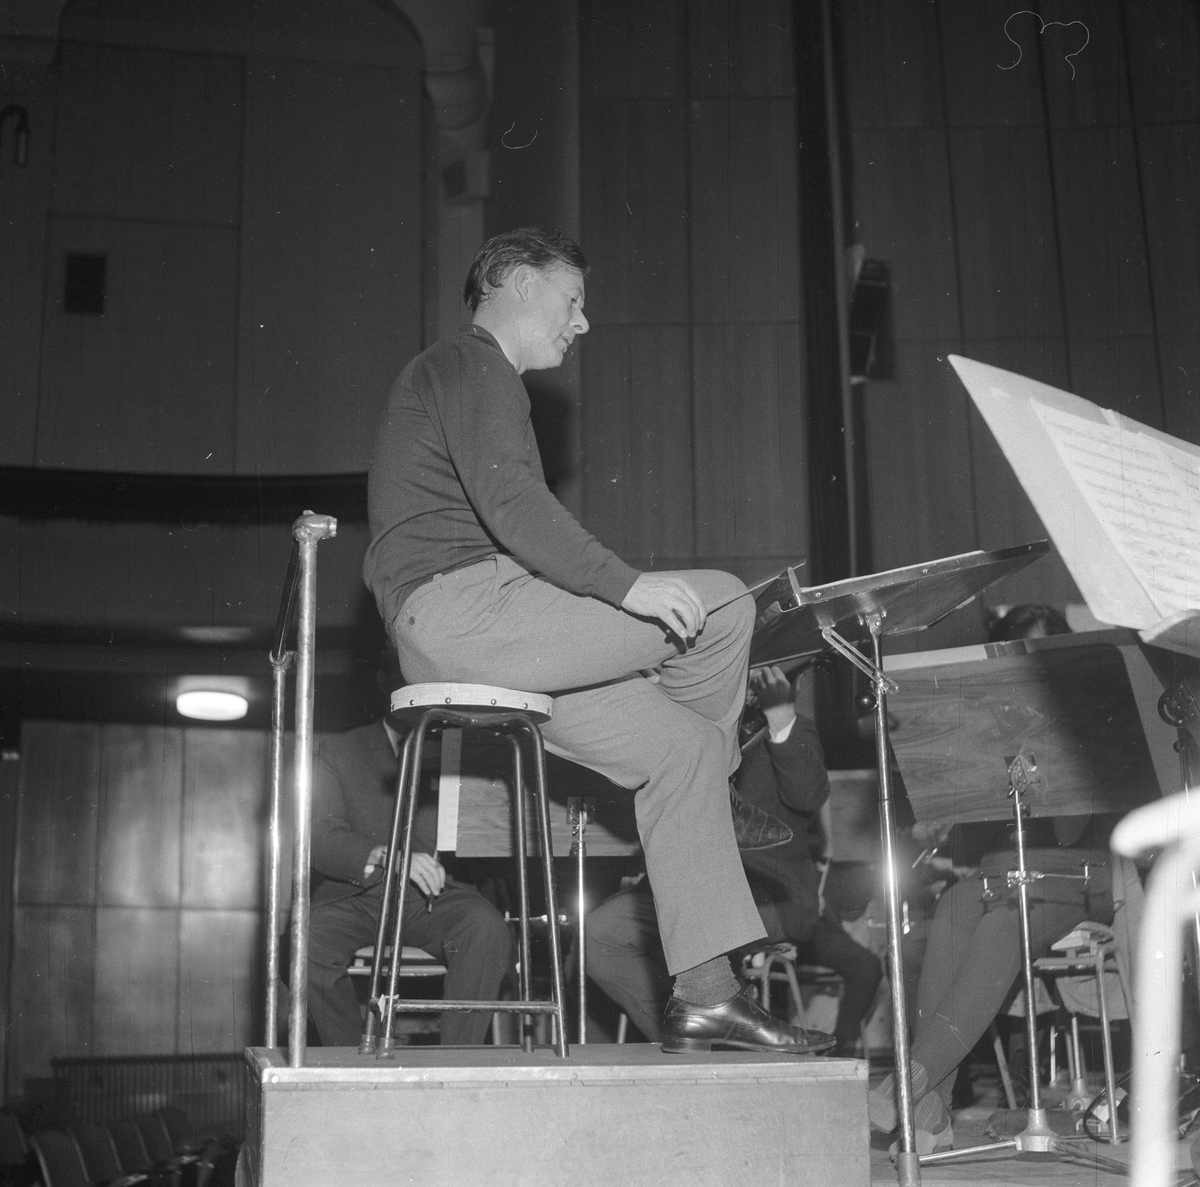 Fra Bergen Filharmoniske orkester 200 års jubileum. Orkester spiller. Fotografert september 1965.